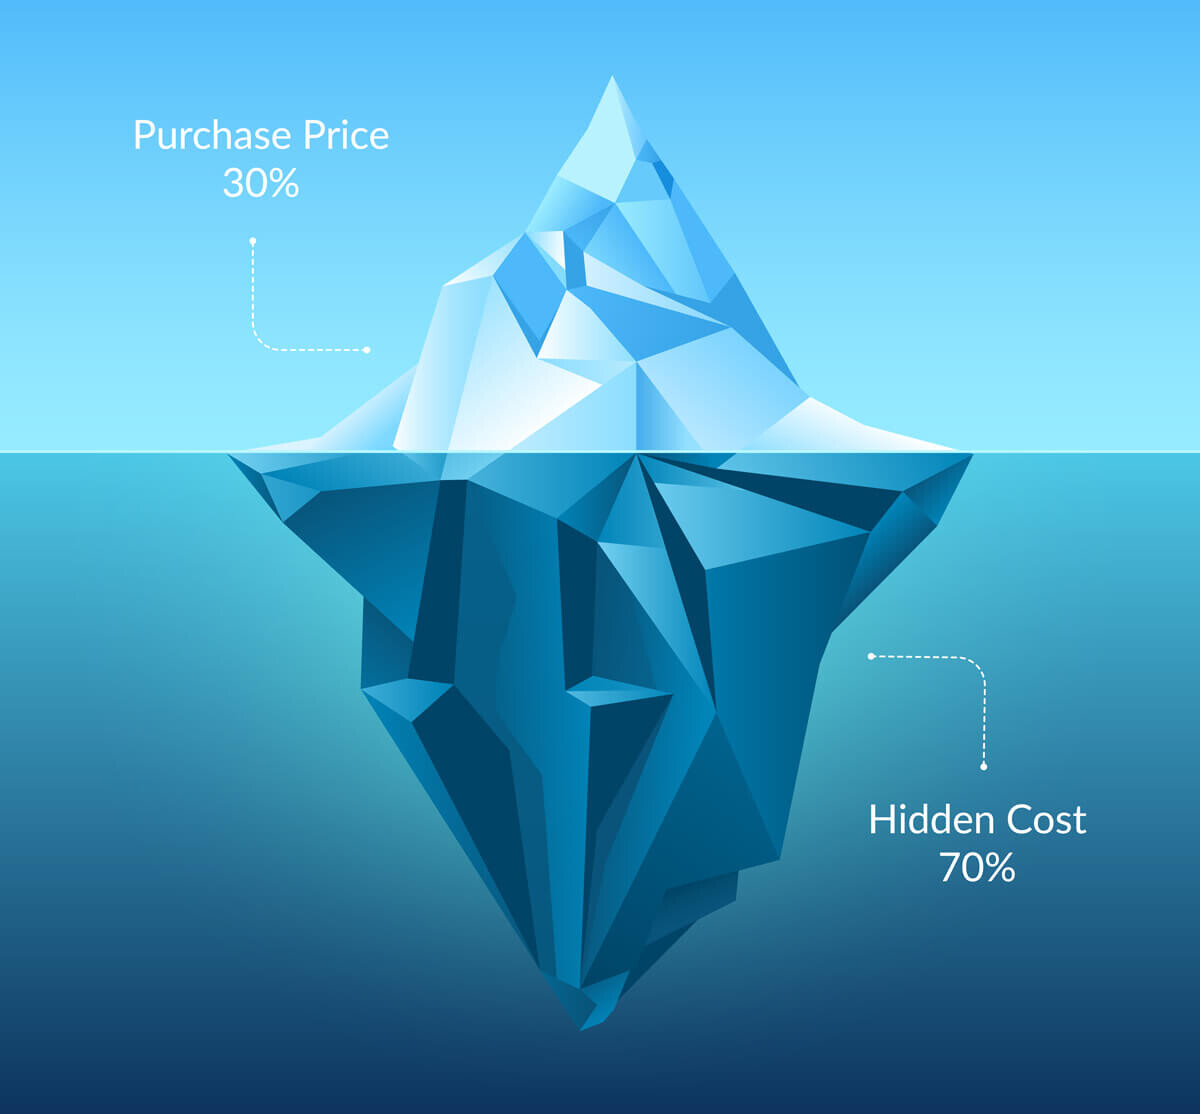 ijsbergmodel voor TCO (Total Cost of Ownership)